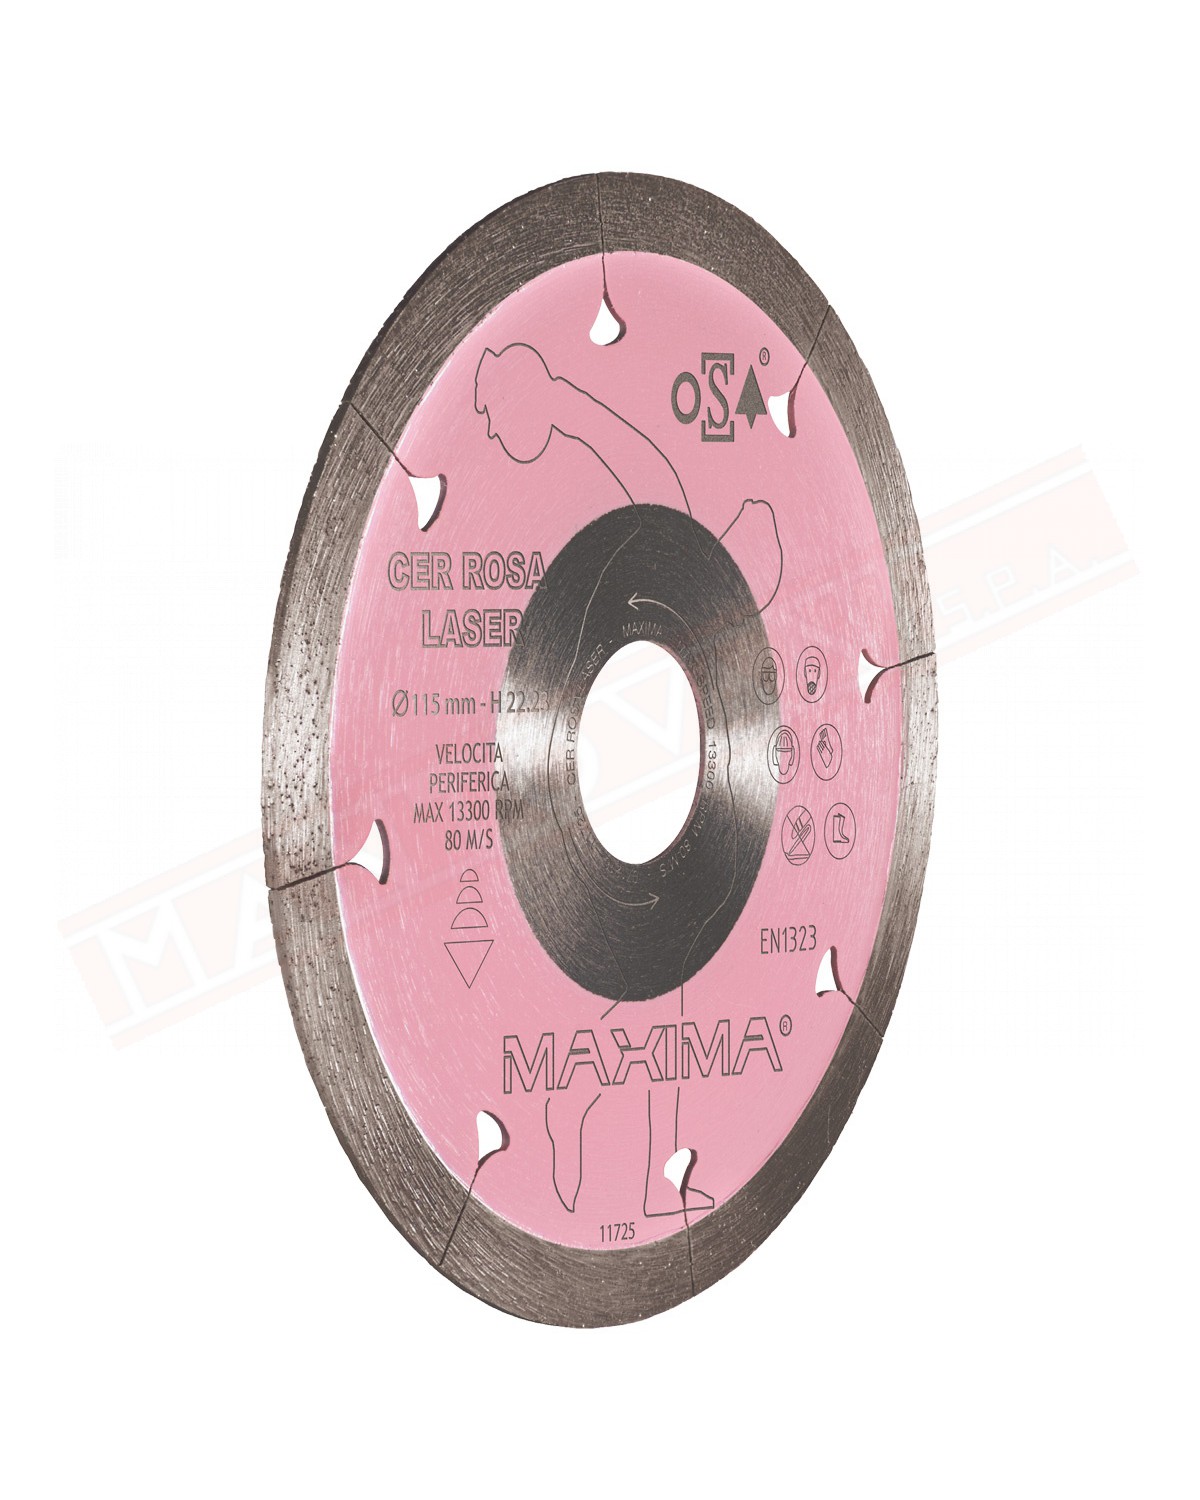 MAXIMA disco diametro 115MM cer rosa laser per tagli a secco su gres, graniti, marmi piastrelle.